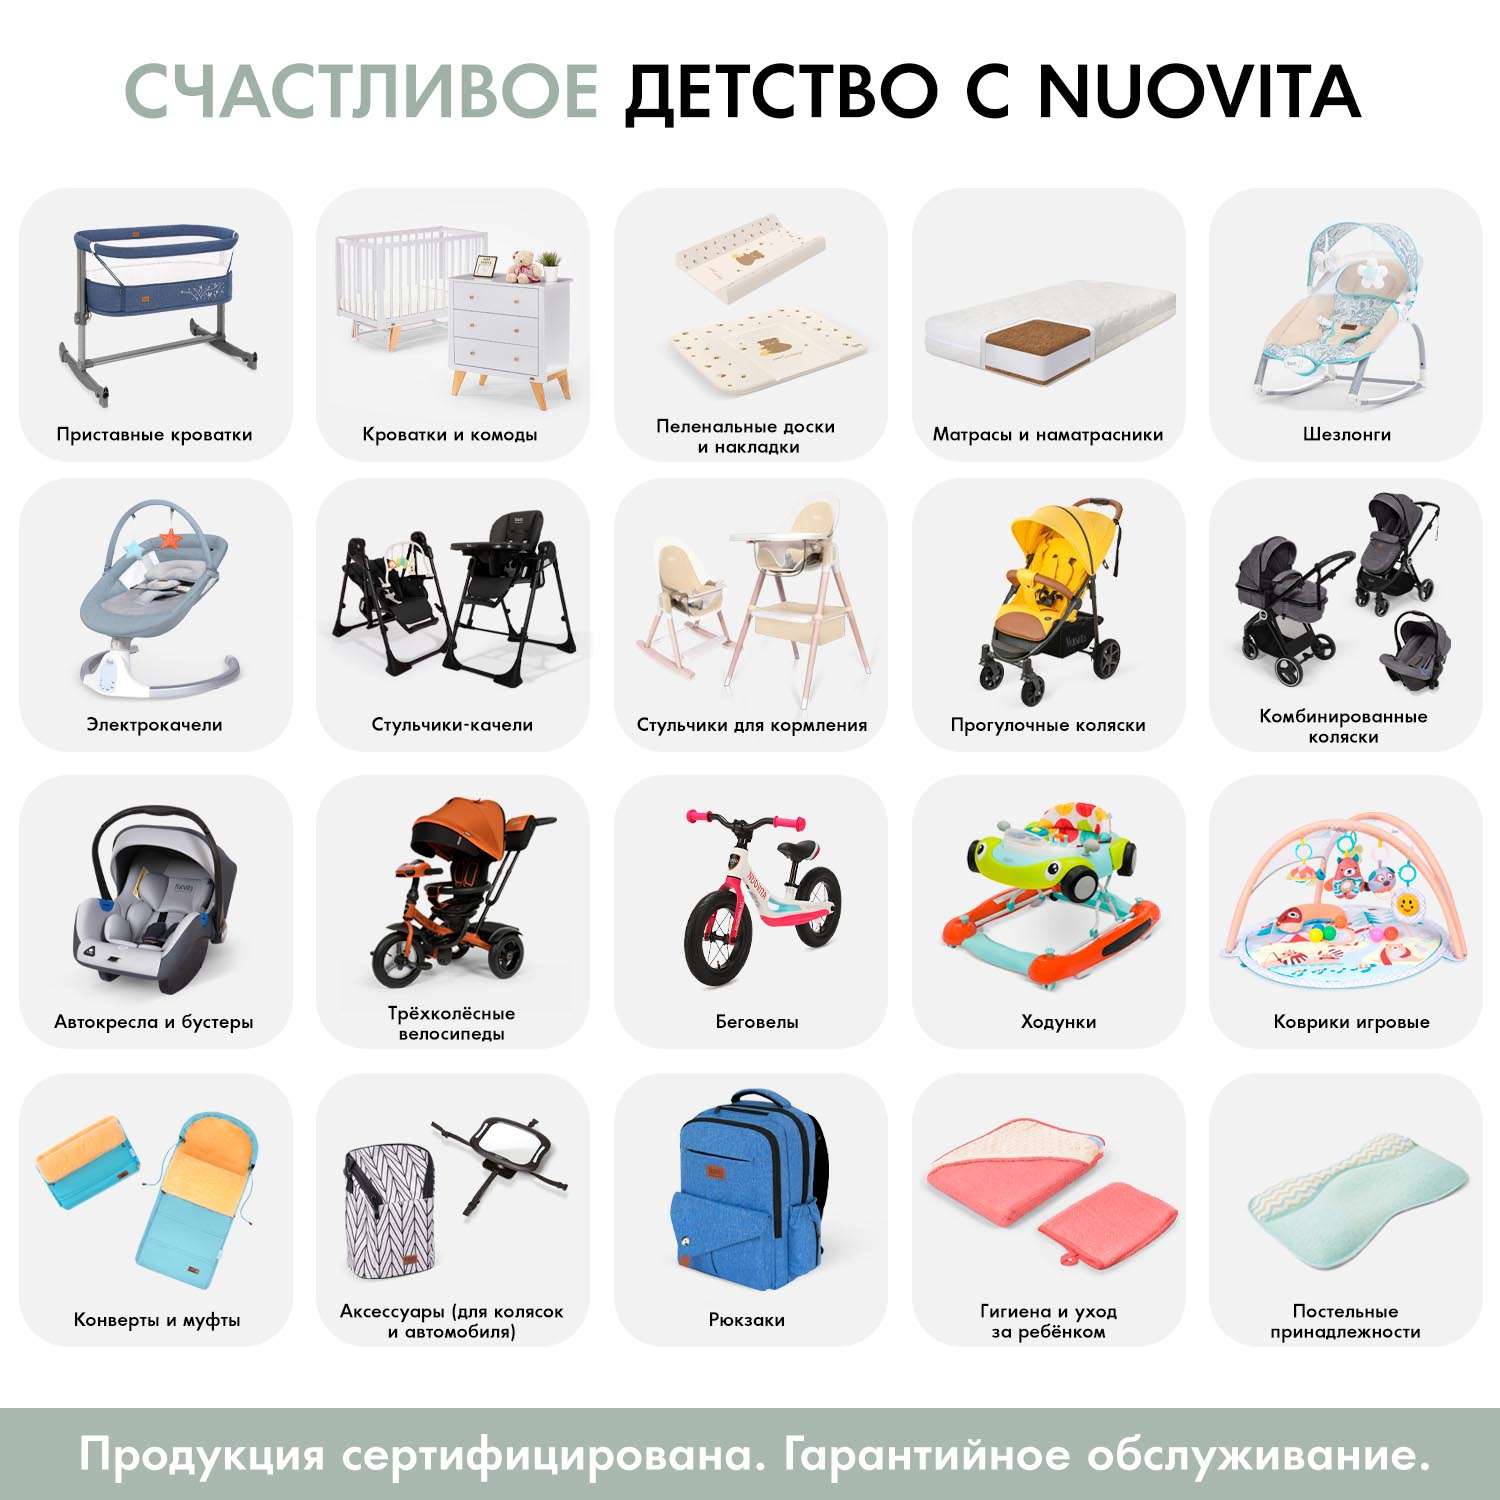 Подушка для новорожденного Nuovita Neonutti Asterisco Dipinto 07 - фото 11